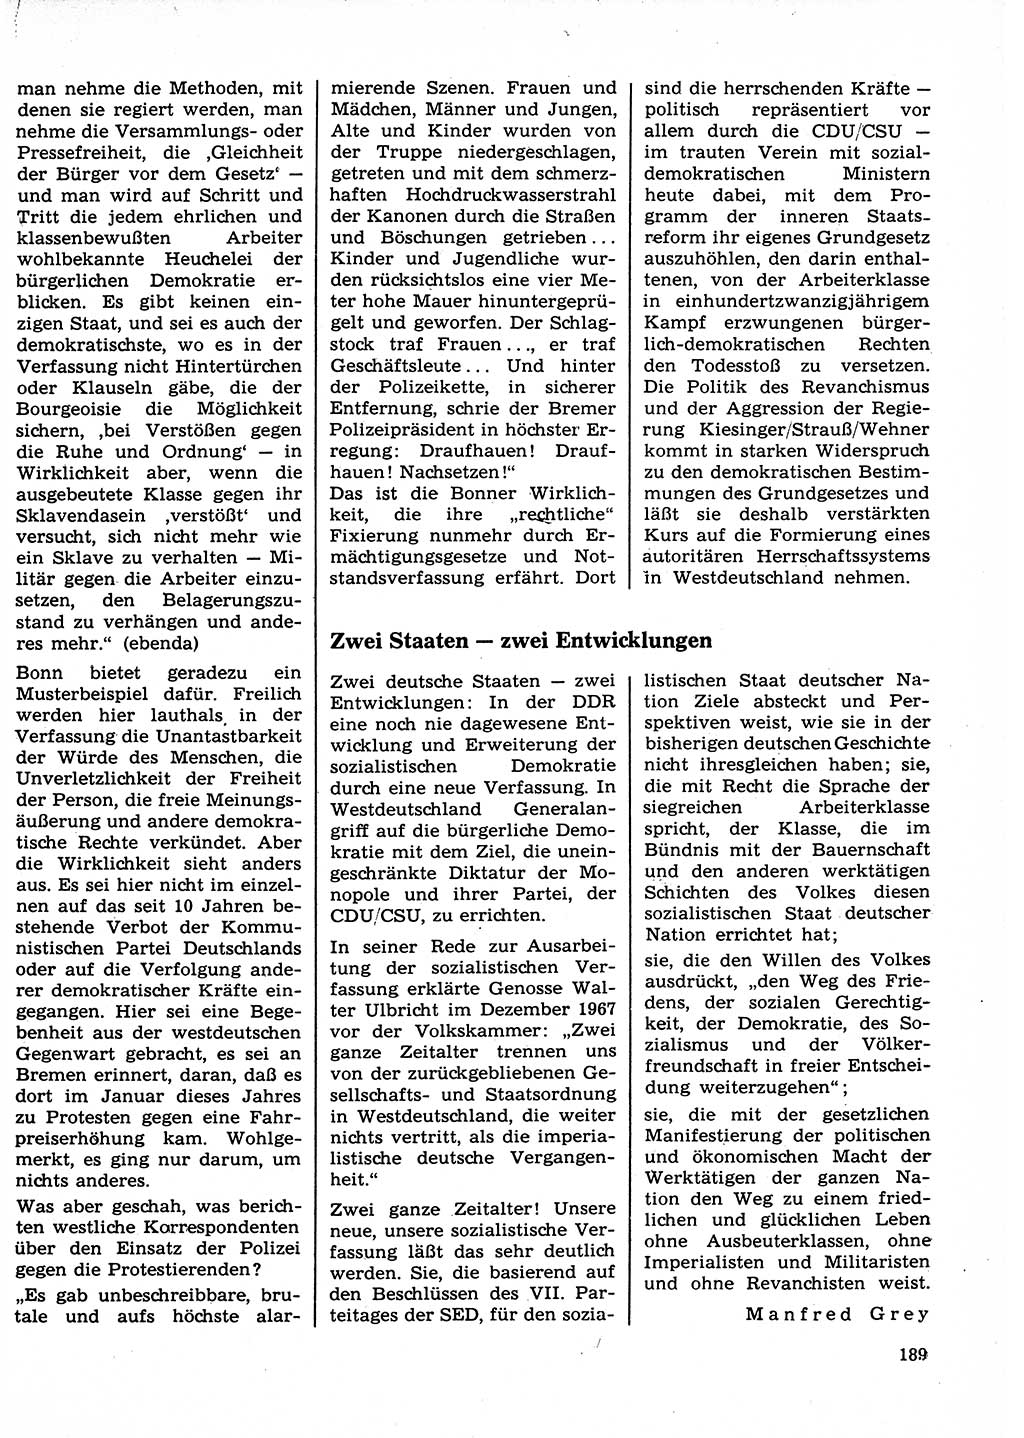 Neuer Weg (NW), Organ des Zentralkomitees (ZK) der SED (Sozialistische Einheitspartei Deutschlands) für Fragen des Parteilebens, 23. Jahrgang [Deutsche Demokratische Republik (DDR)] 1968, Seite 189 (NW ZK SED DDR 1968, S. 189)